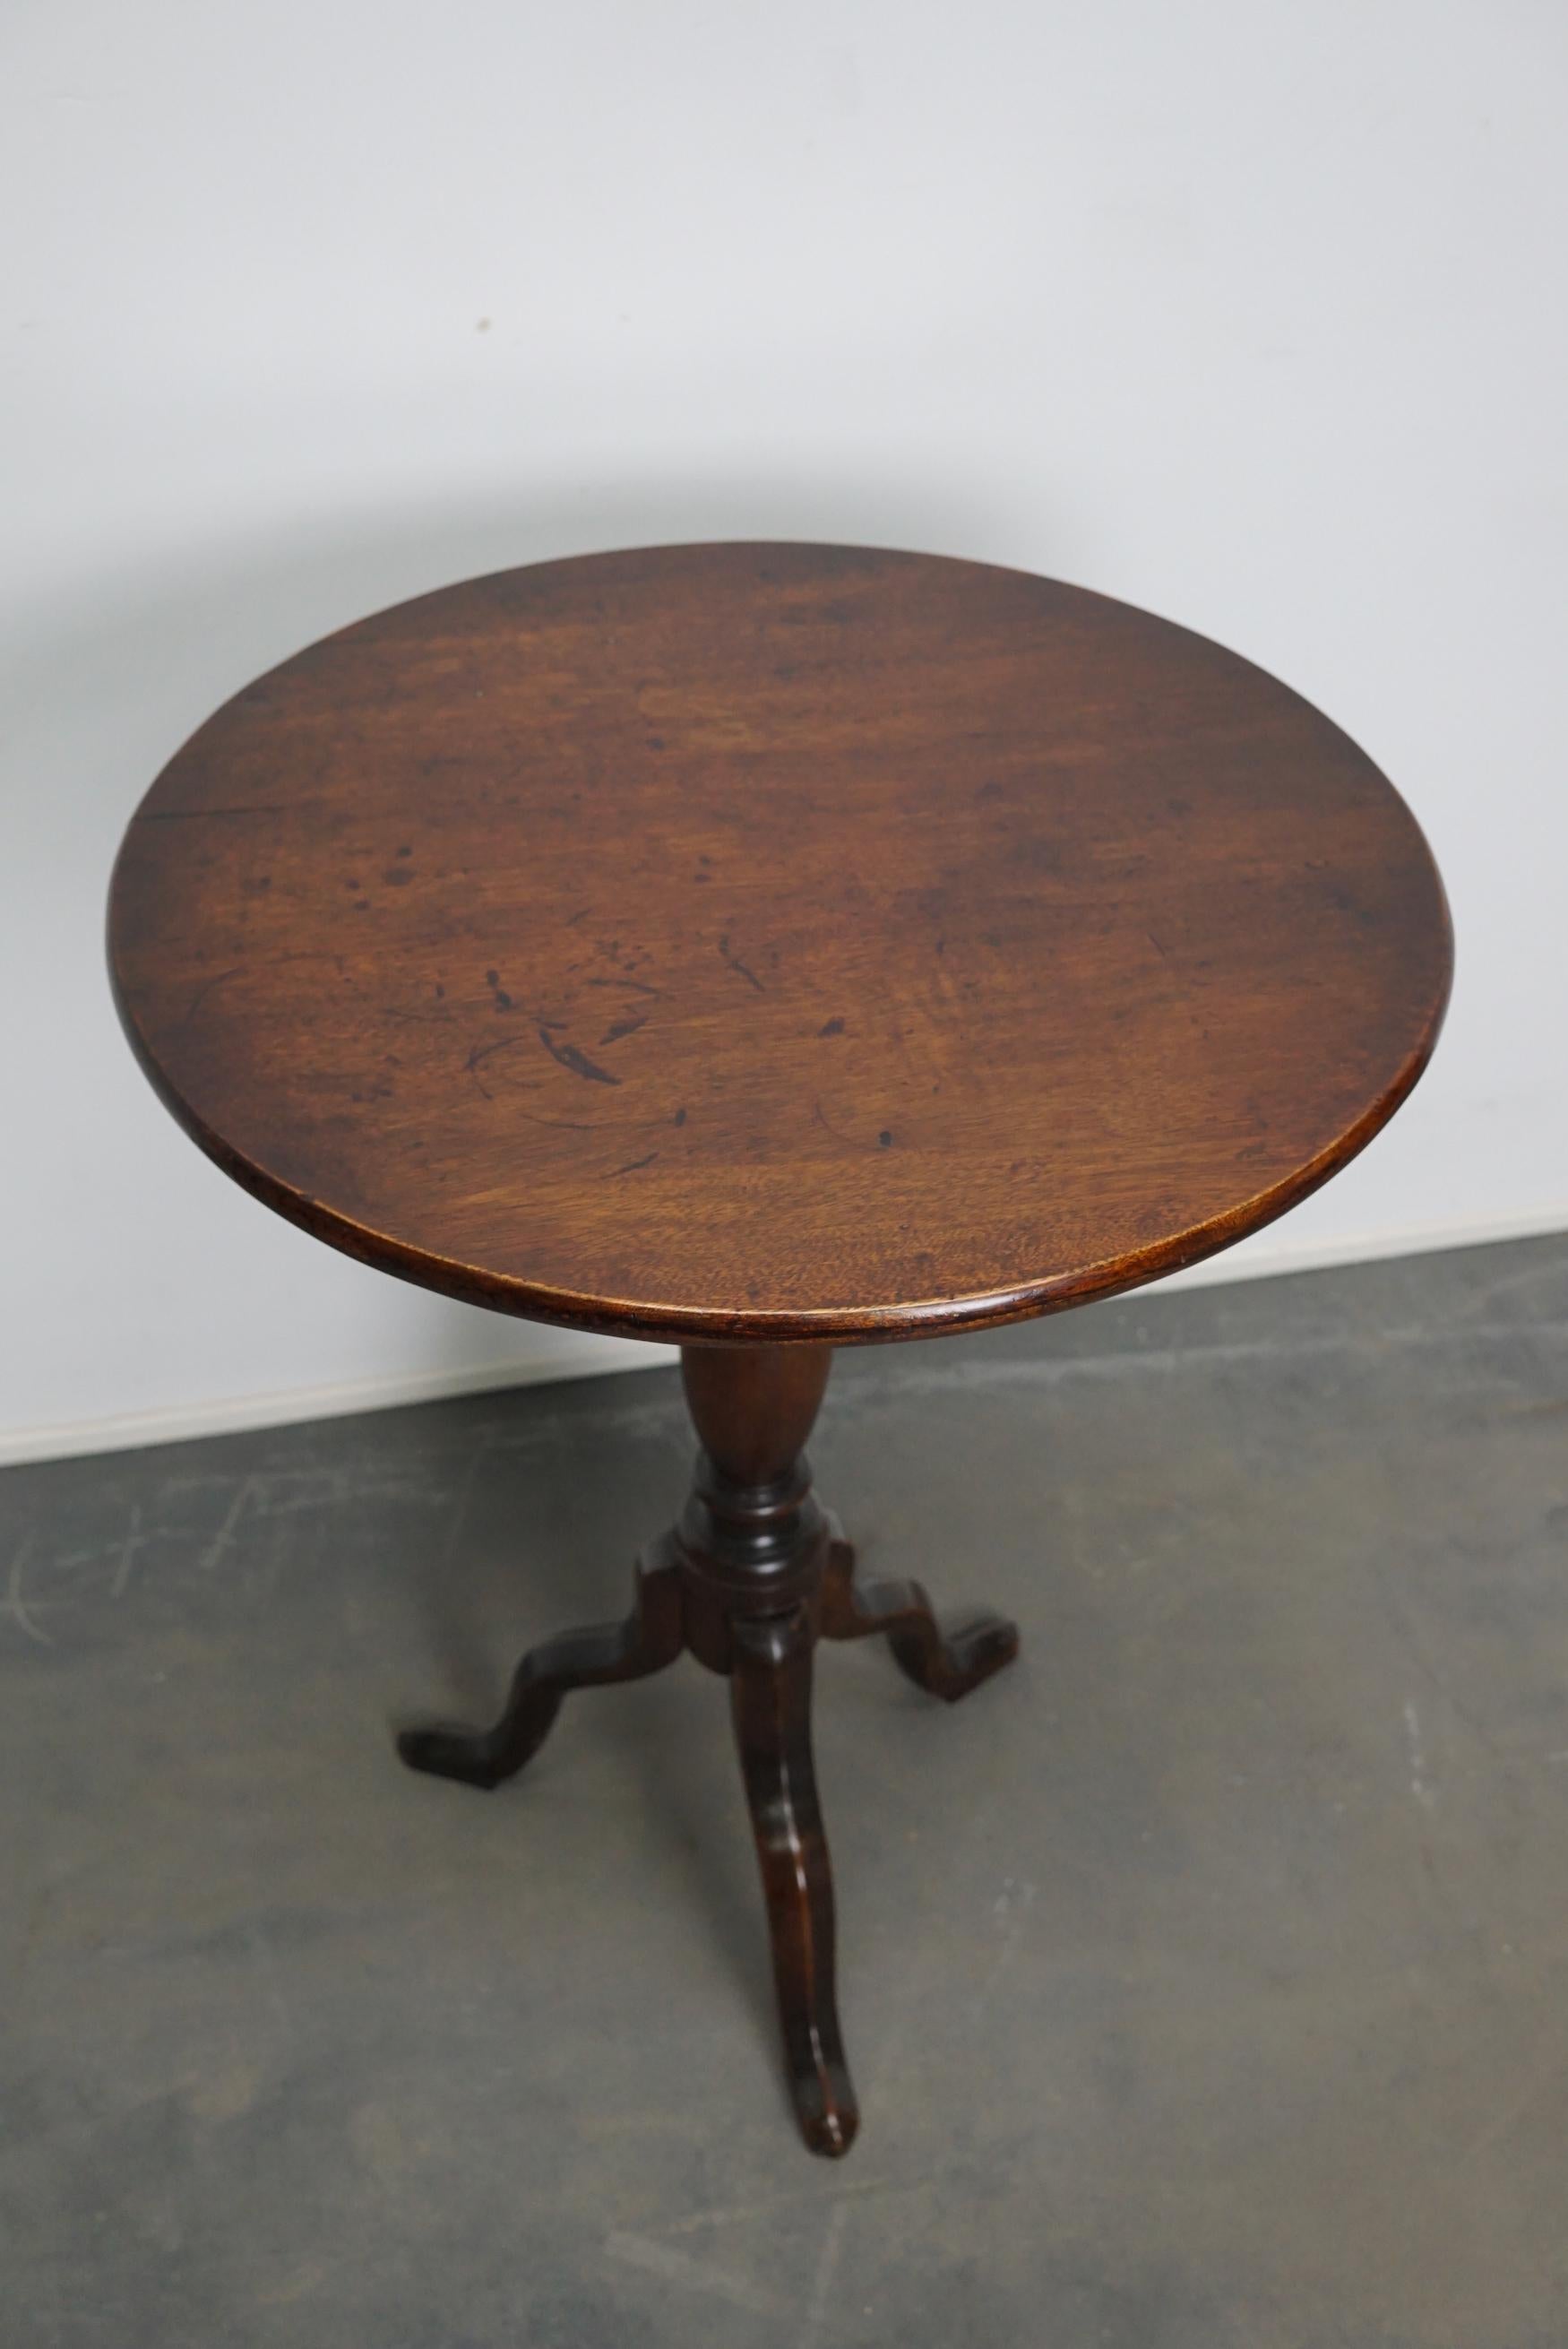 Jolie table à vin en acajou du 18ème siècle. Cette table présente un plateau basculant en acajou massif sur des pieds tripodes. La table a été restaurée et est en très bon état.